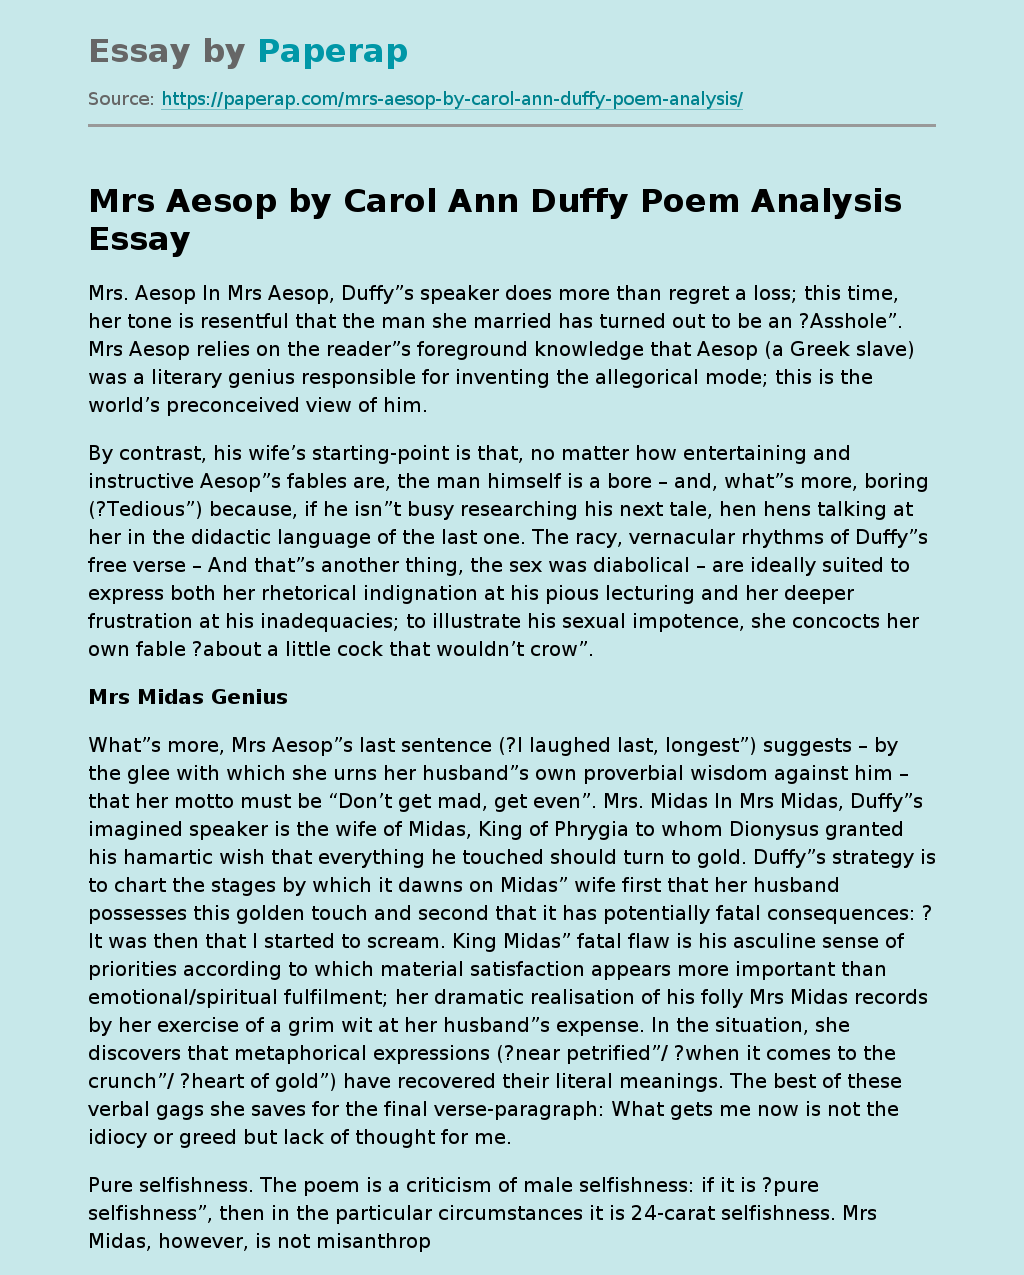 Mrs Aesop by Carol Ann Duffy Poem Analysis